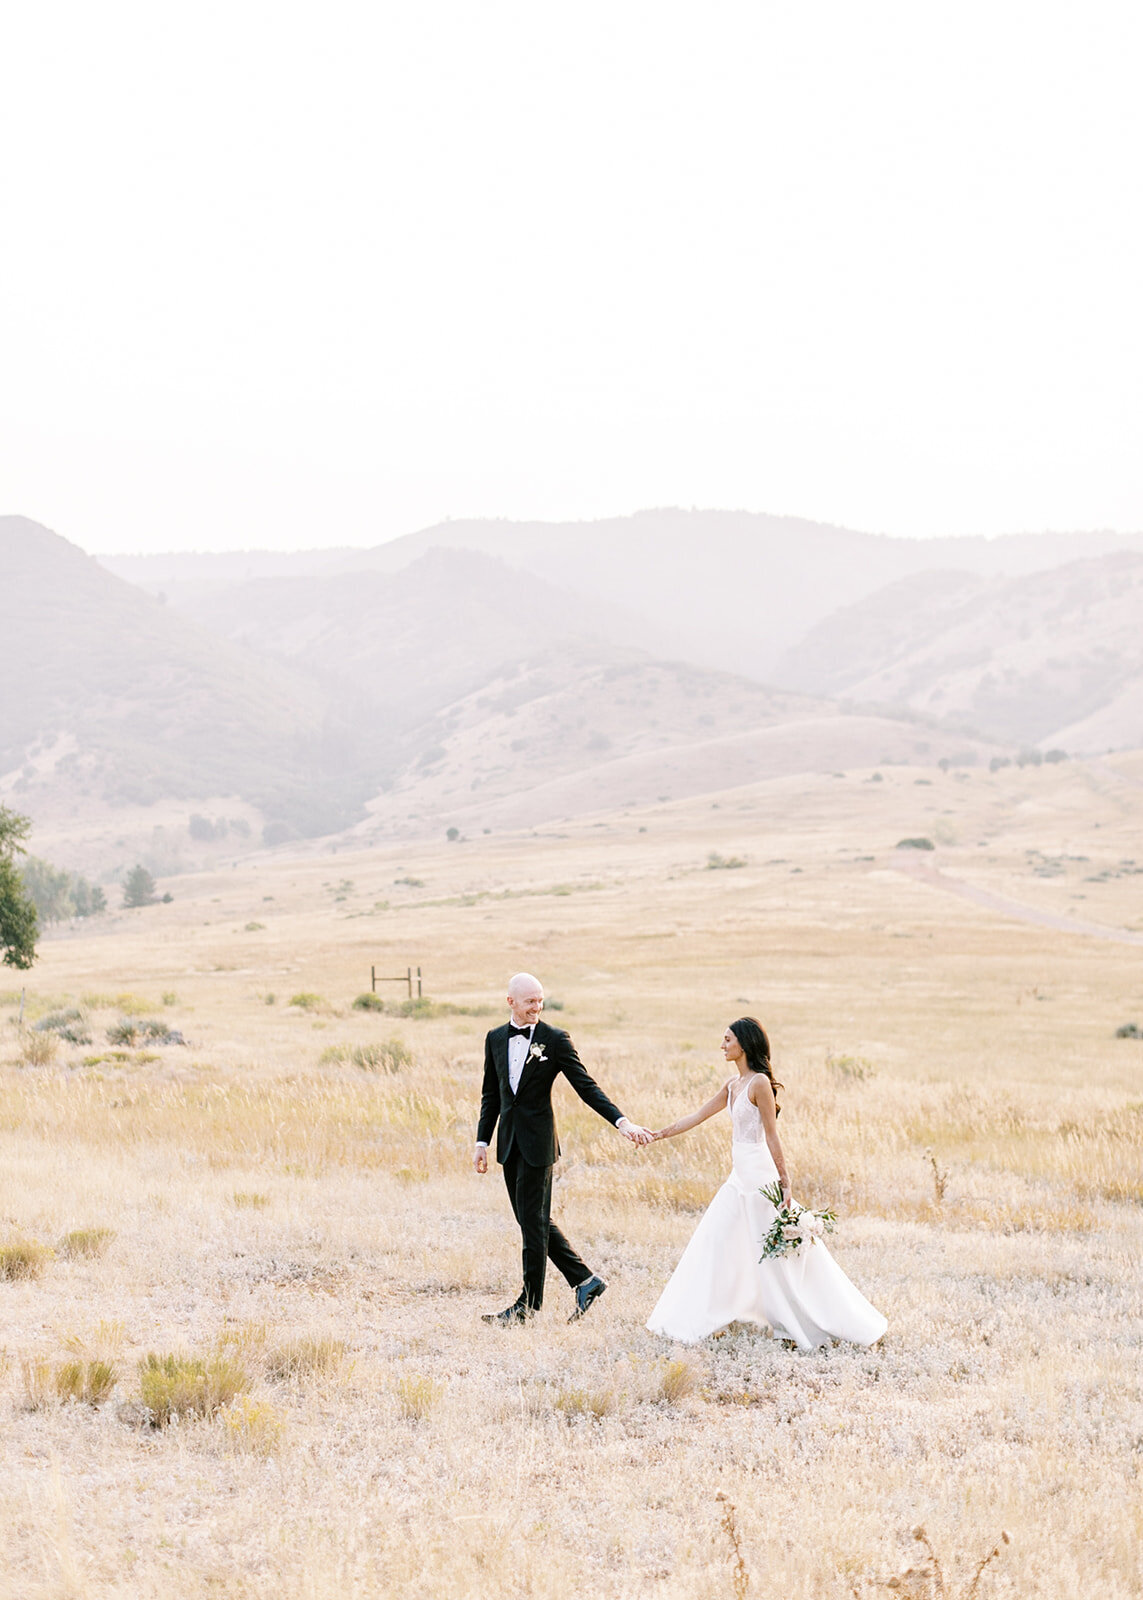 Bride and groom walking through a field at an outdoor Colorado wedding venue